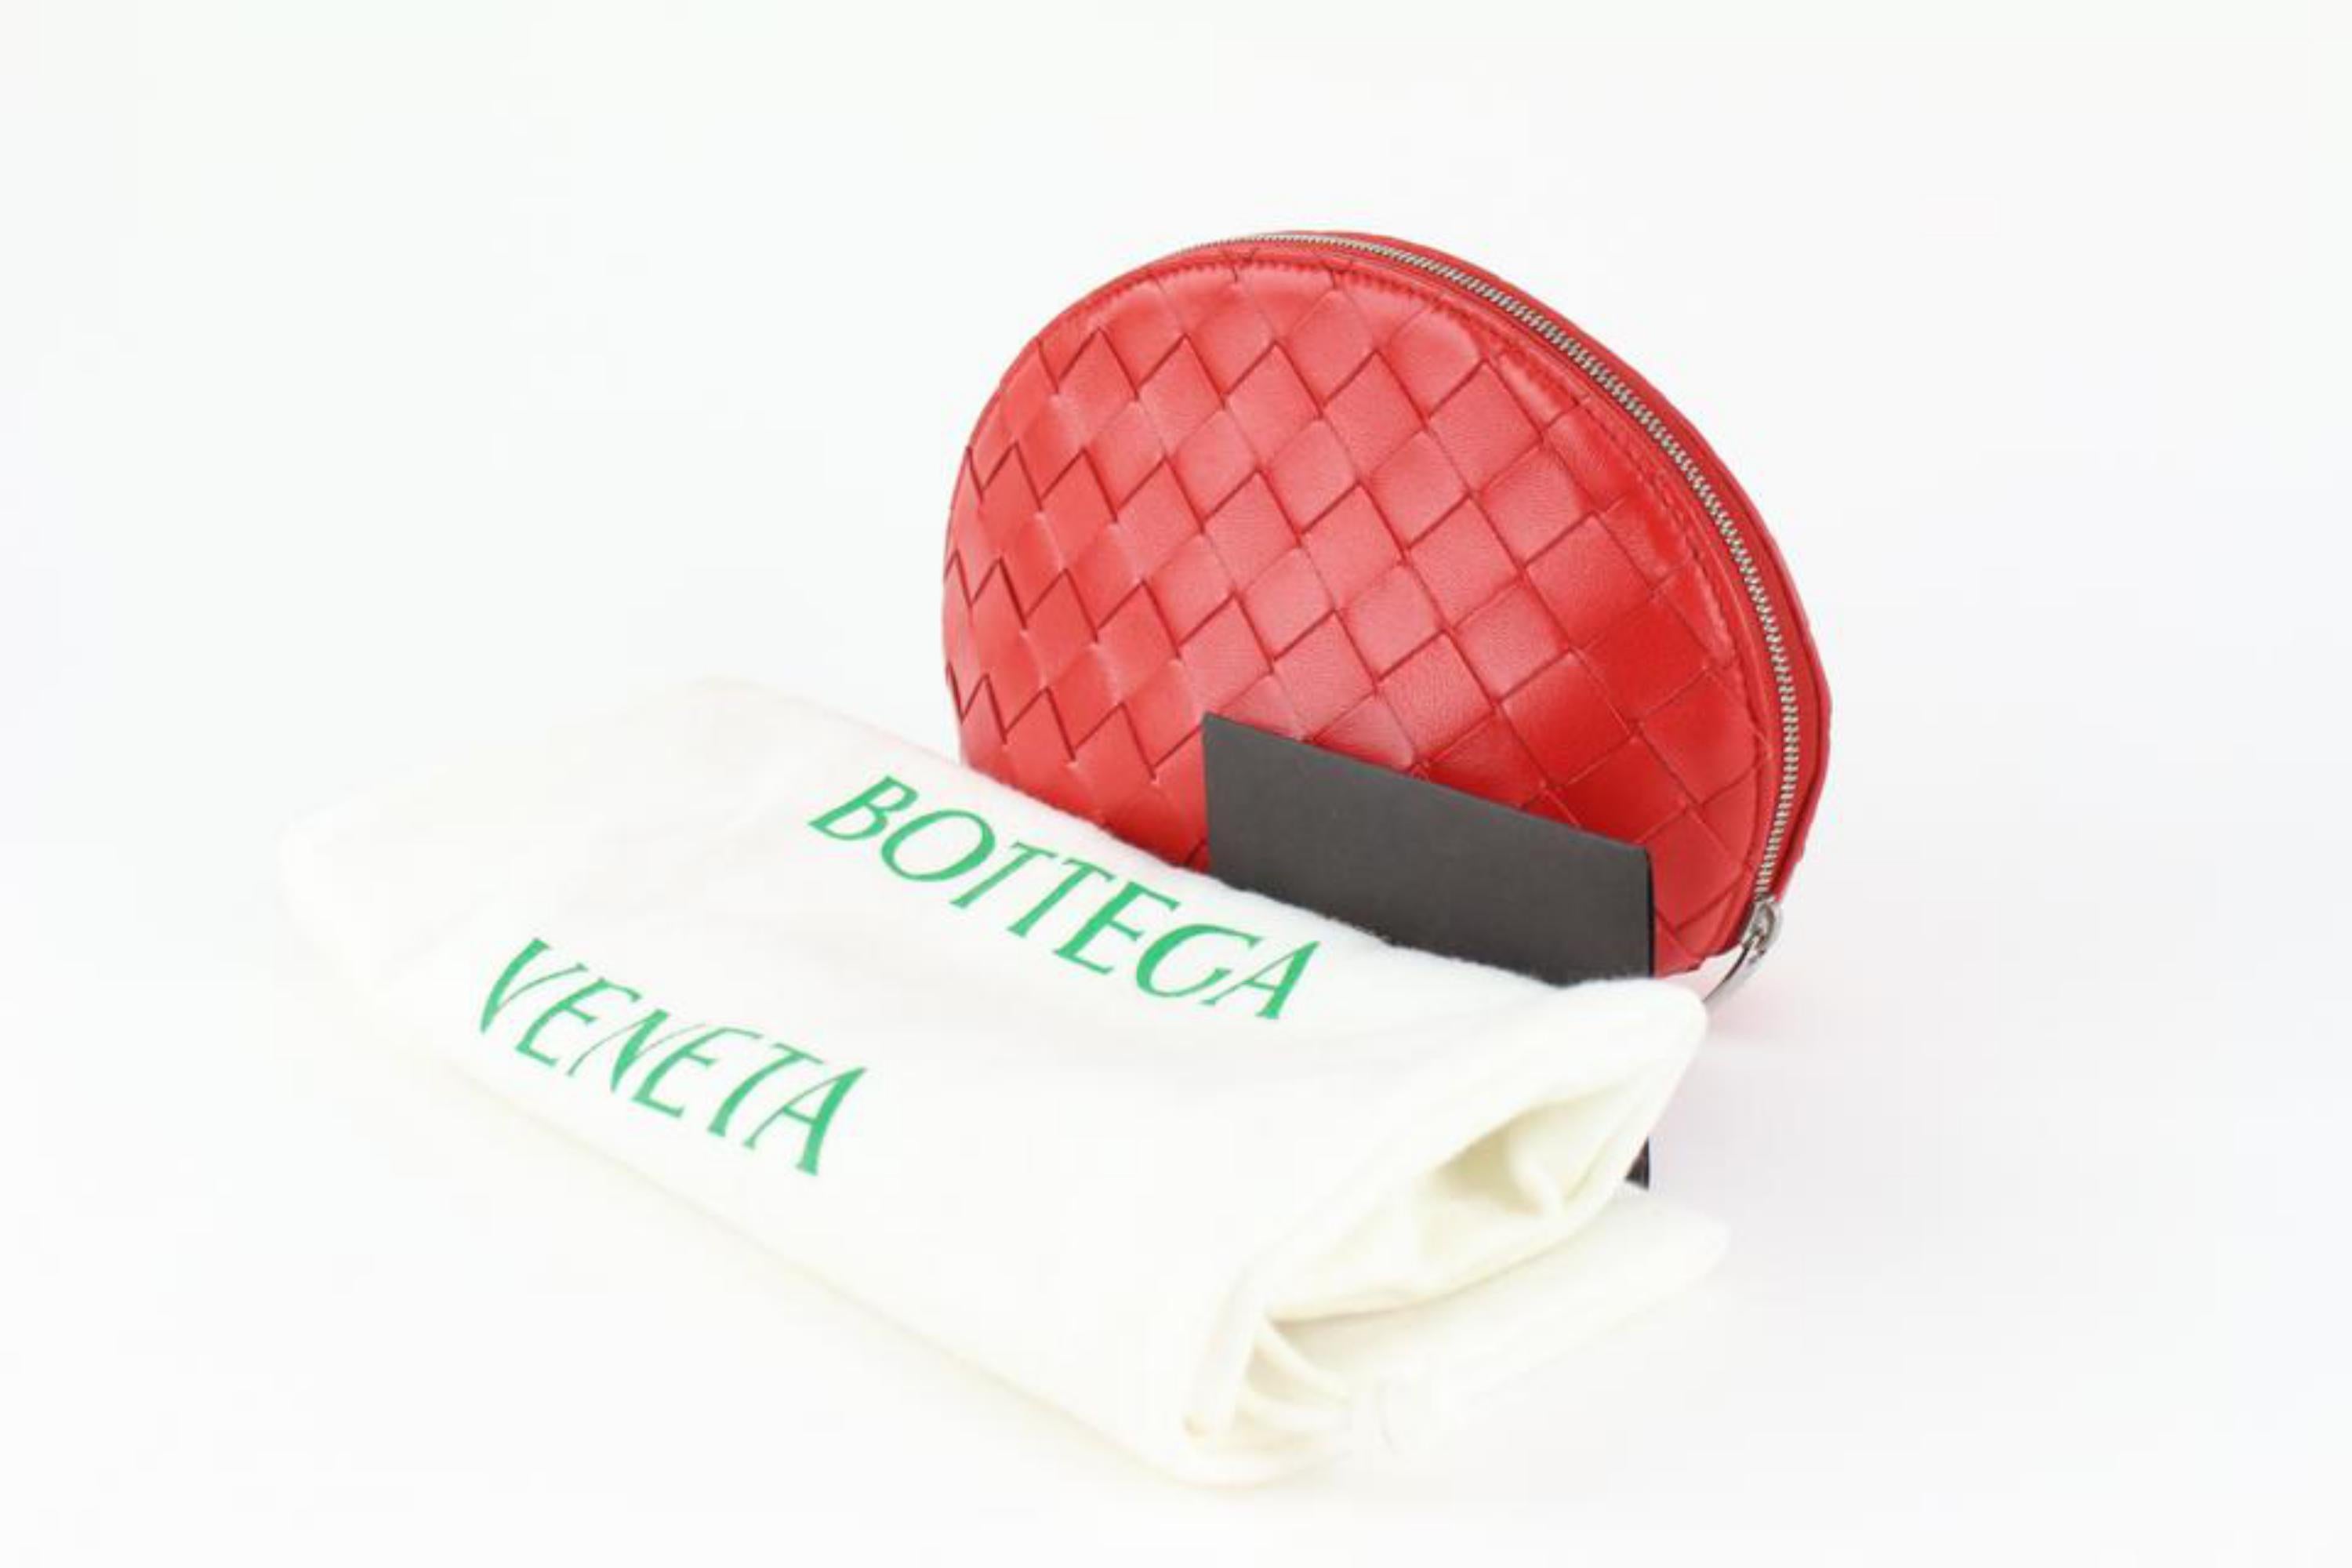 Bottega Veneta Rote Intrecciato-Kosmetiktasche/Kosmetikkoffer 1123bv33 aus Leder
Code/Zeitungsnummer: B08642914P
In: Italien hergestellt
Maße: Länge:  8